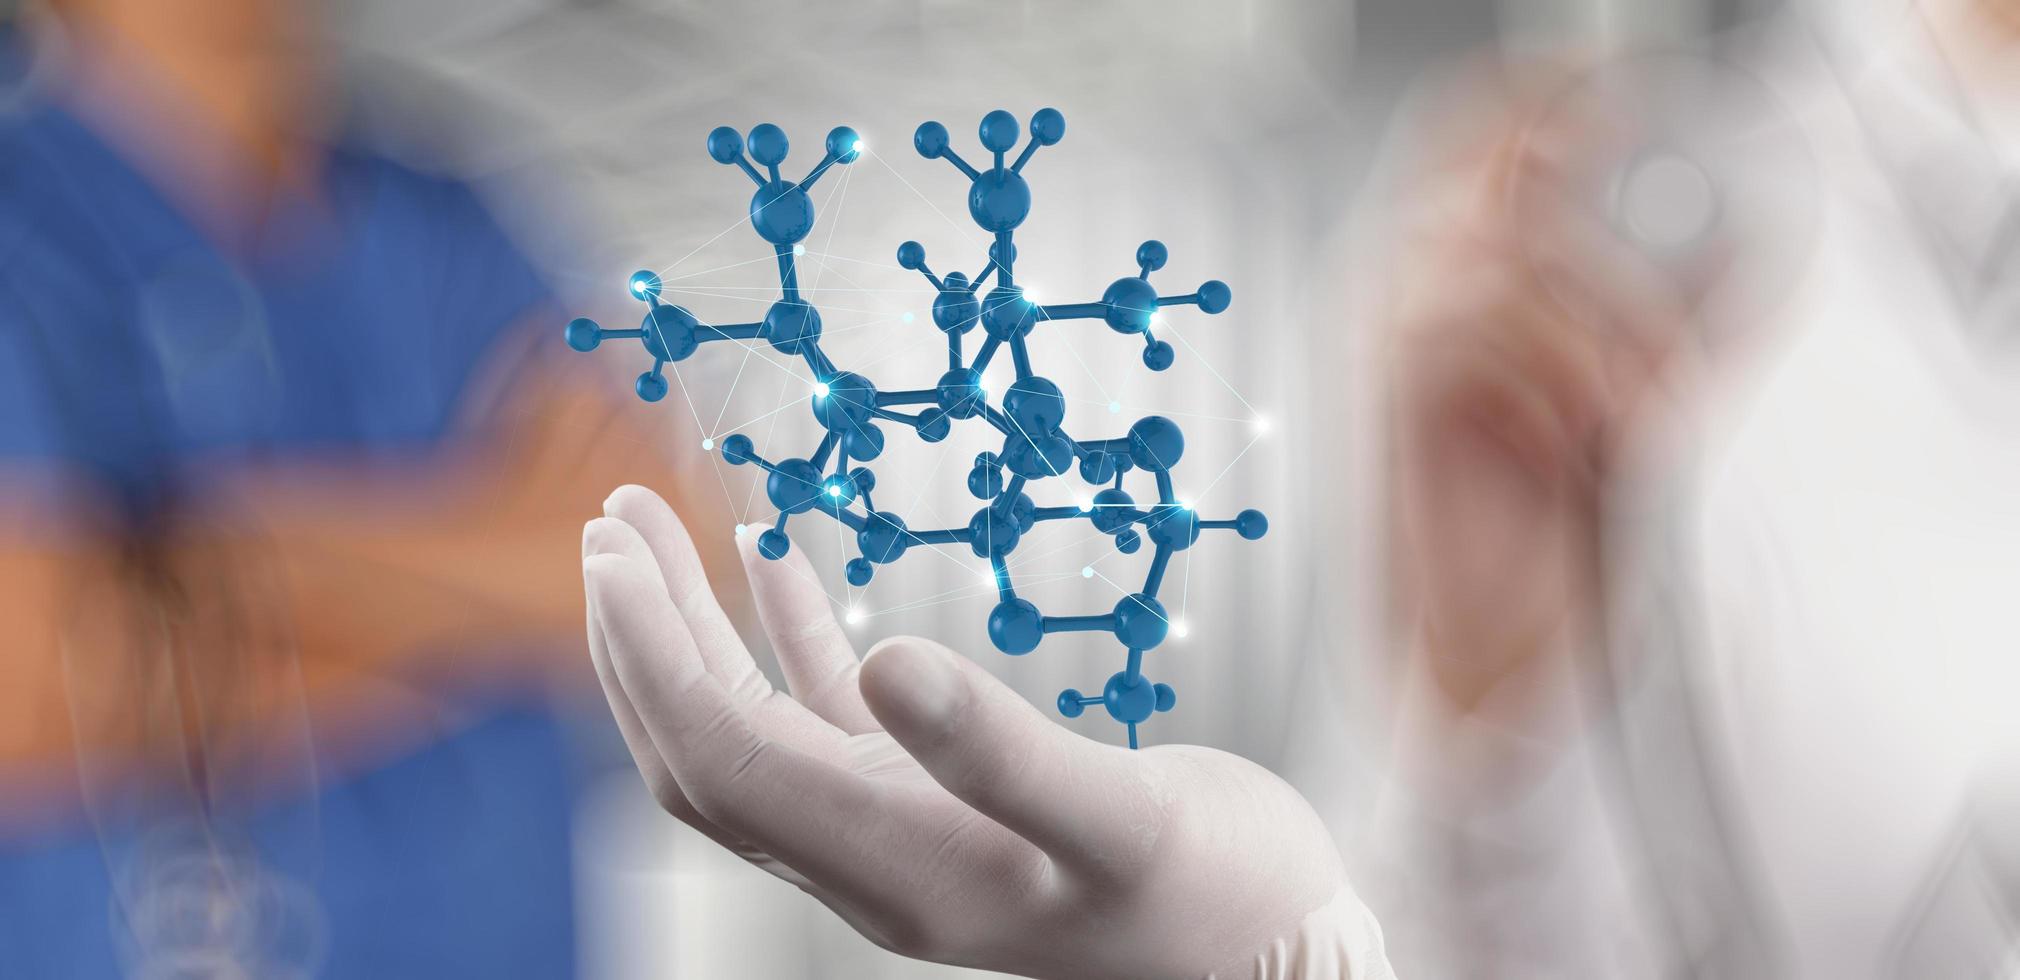 Wissenschaftler Arzt Hand hält virtuelle molekulare Struktur im Labor als Konzept foto